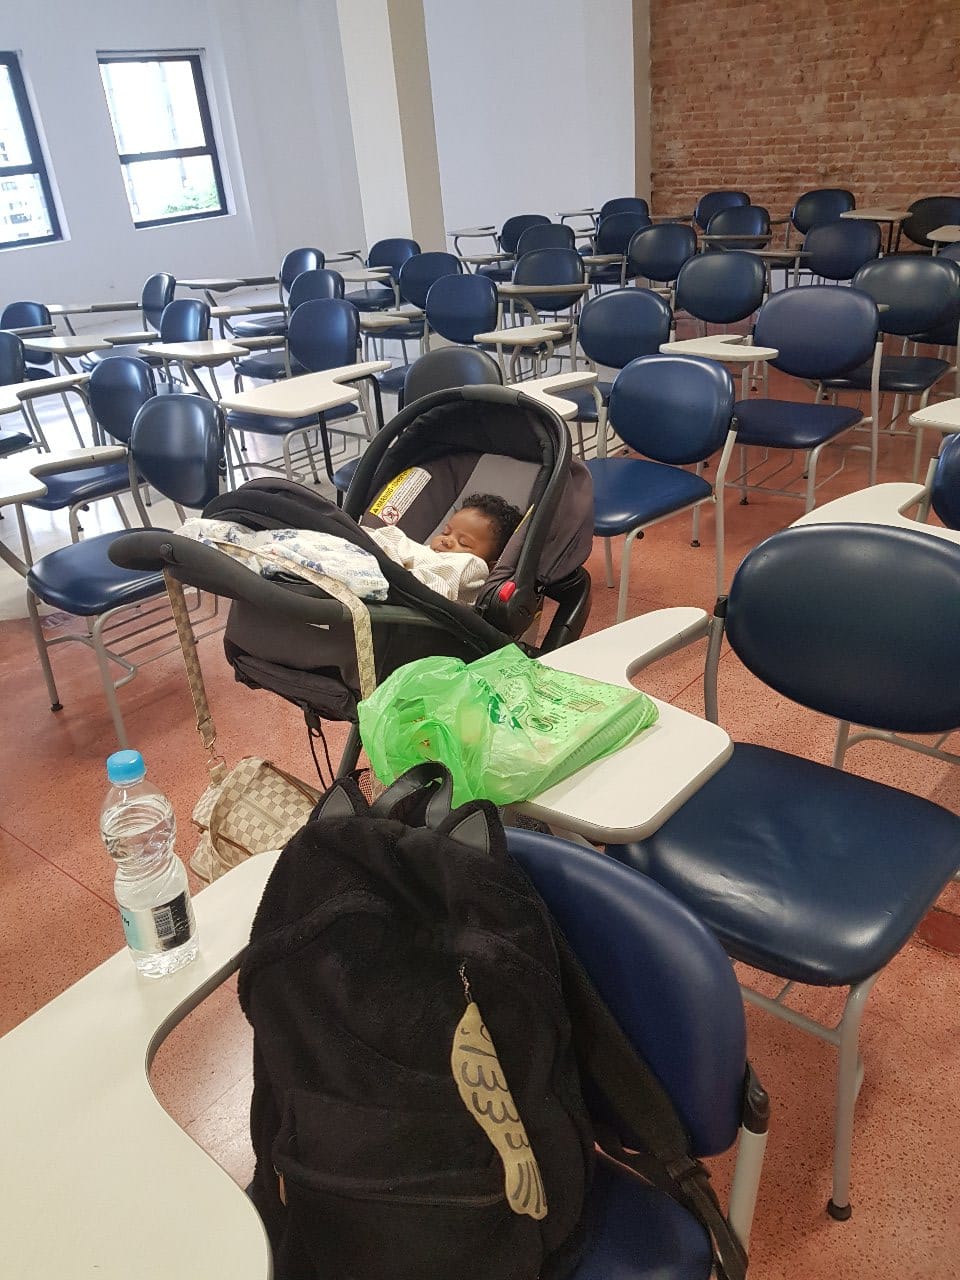 Carrinho de bebê dentro de uma sala de aula